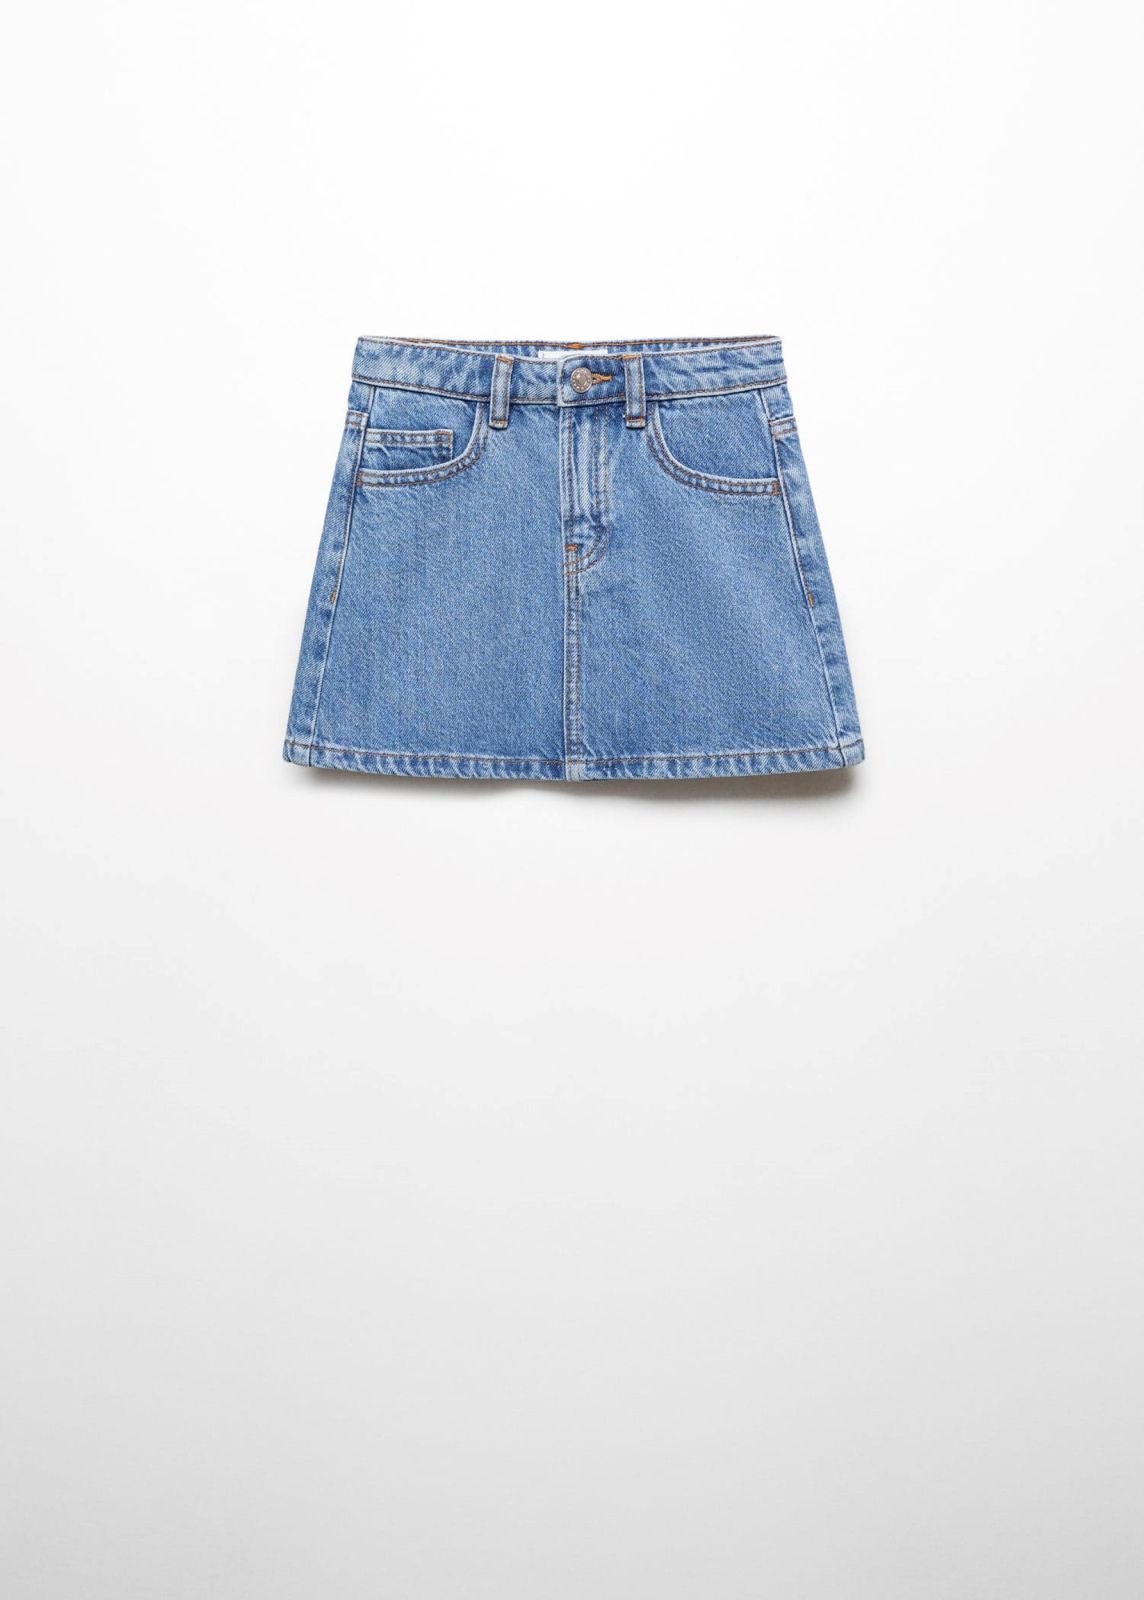  חצאית ג'ינס מיני / בנות של MANGO